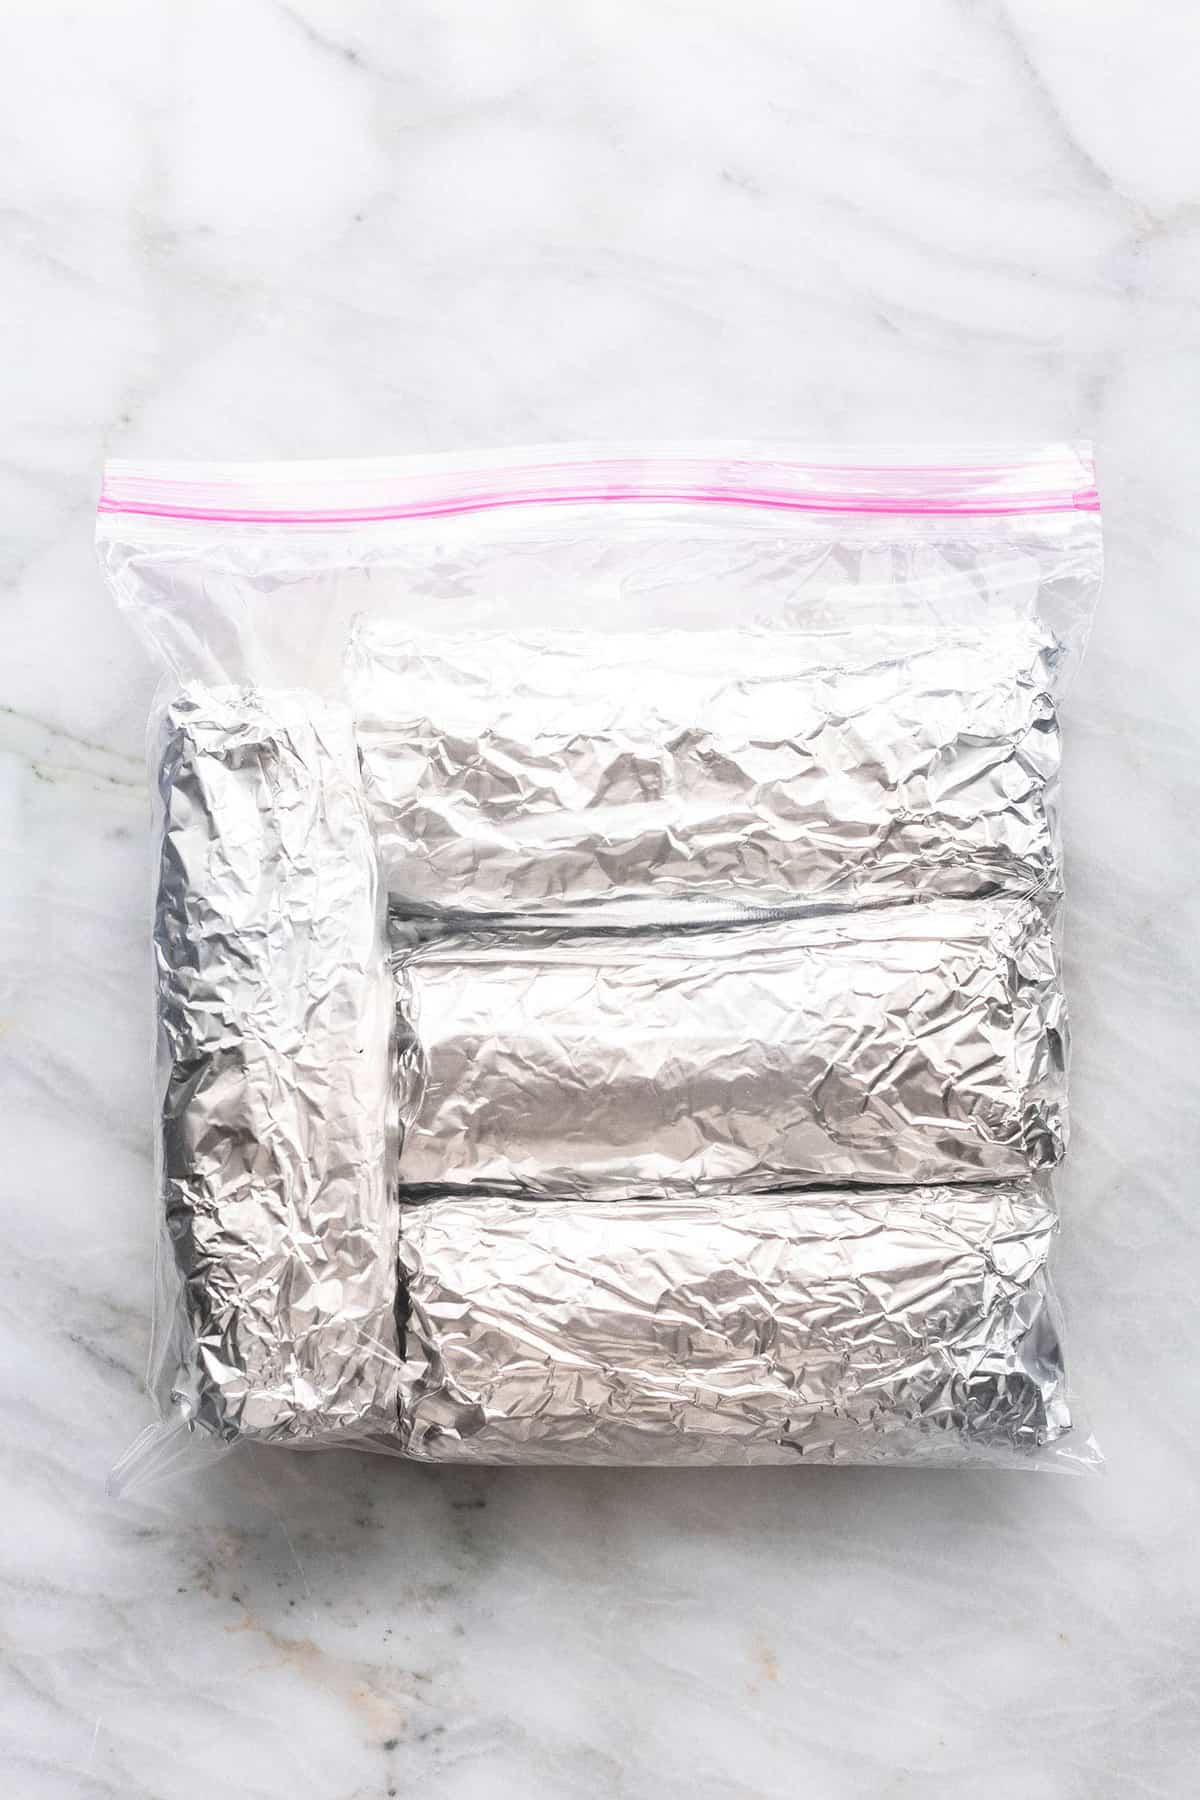 Einfach machen Ei und Wurst Gefrierschrank Frühstück Burritos Rezept | lecremedelacrumb.com